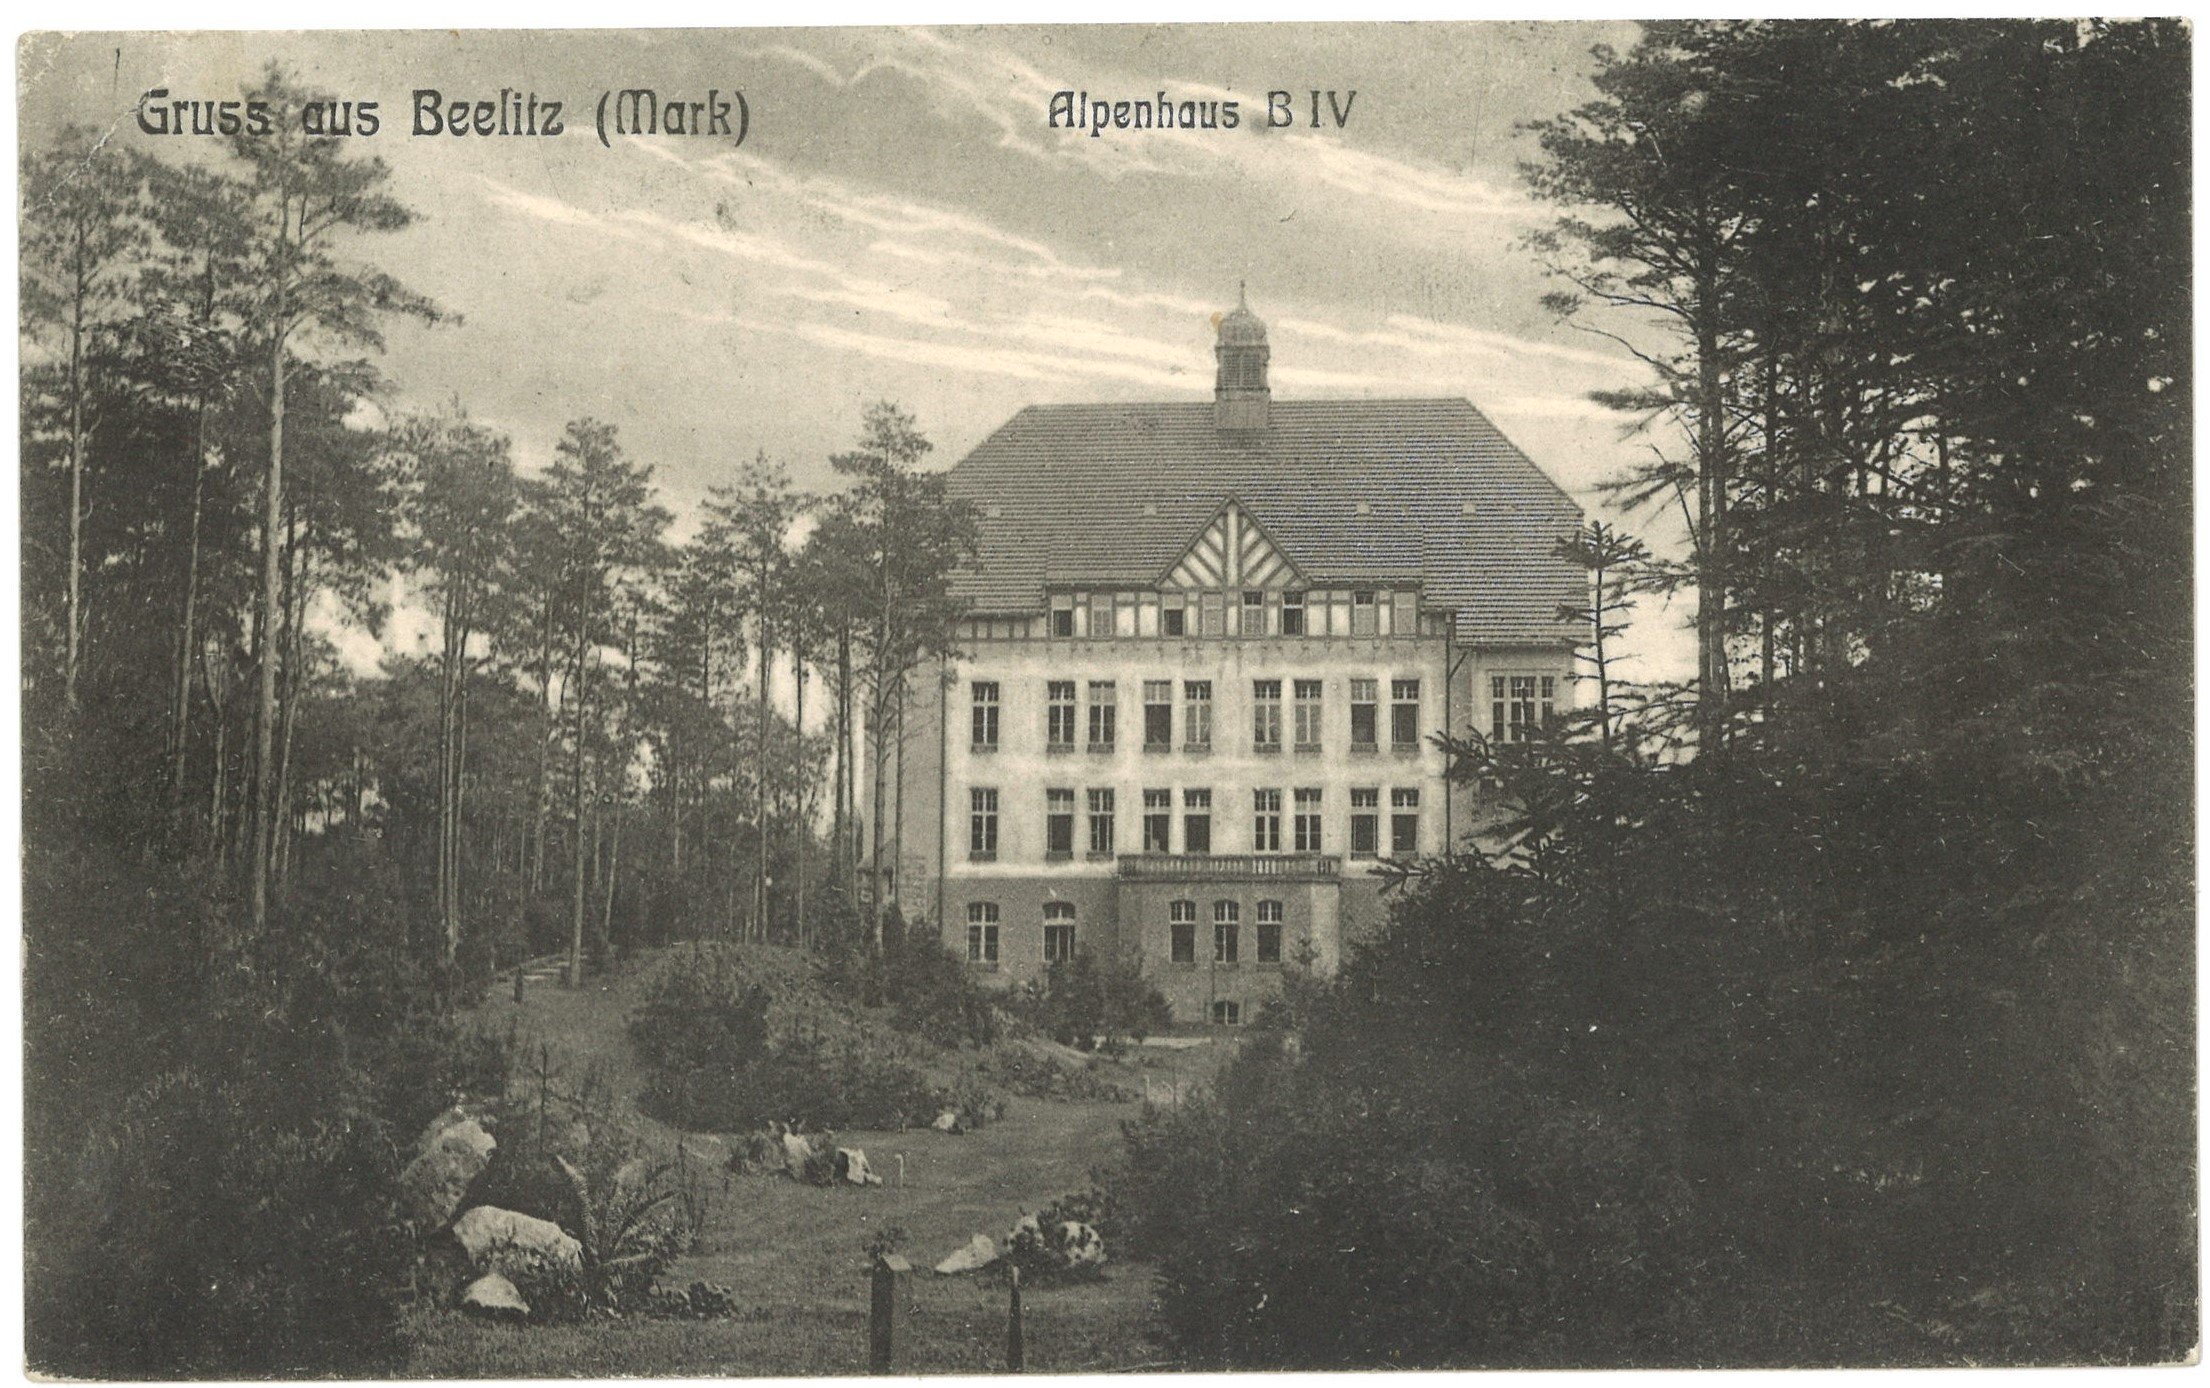 Beelitz-Heilstätten: Alpenhaus B IV (Landesgeschichtliche Vereinigung für die Mark Brandenburg e.V. CC BY)